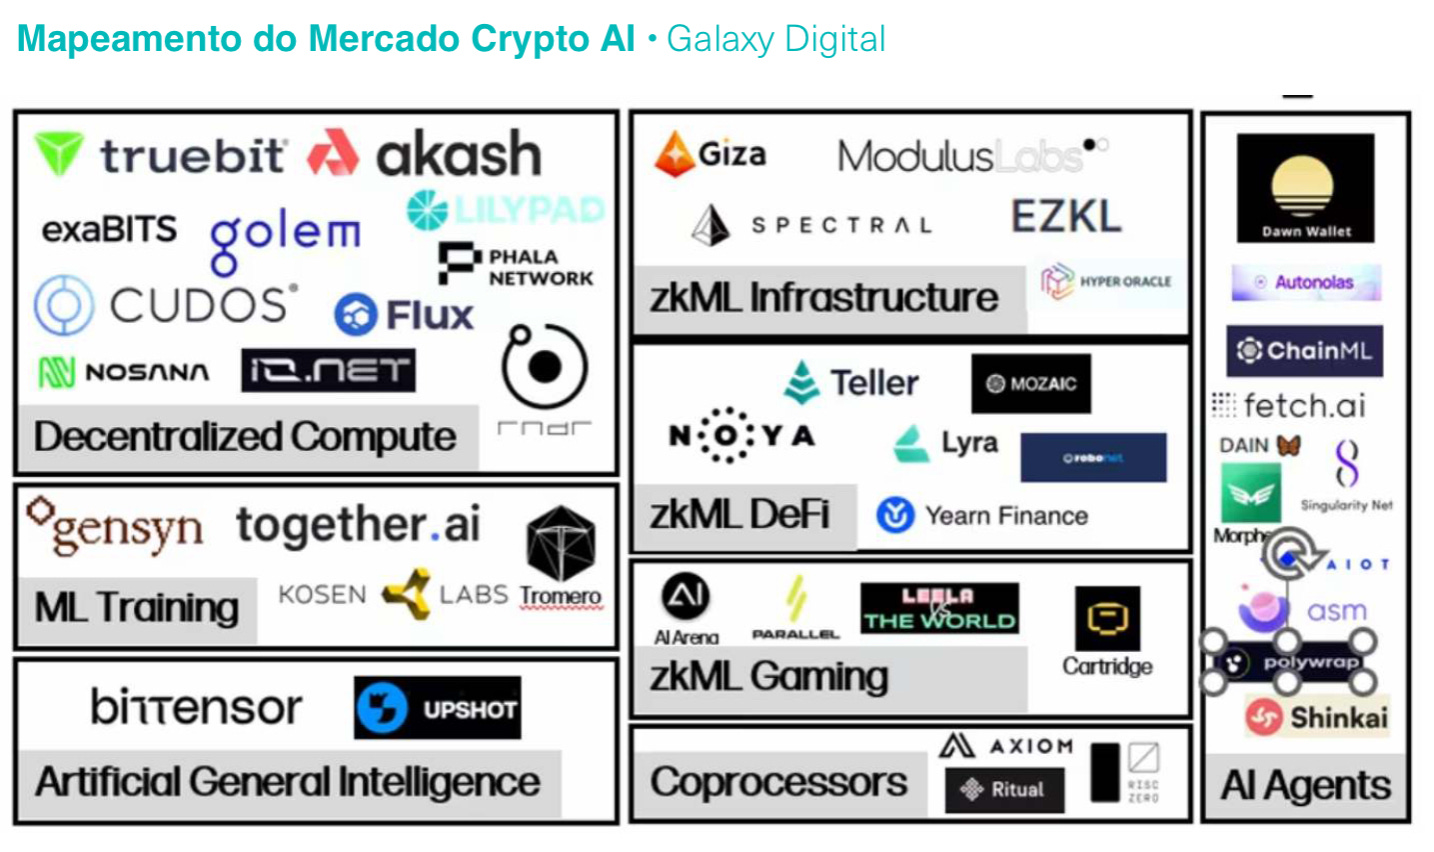 Mapeamento do Mercado Crypto AI - Galaxy Digital. Fonte: Relatório Semanal TC Cripto.